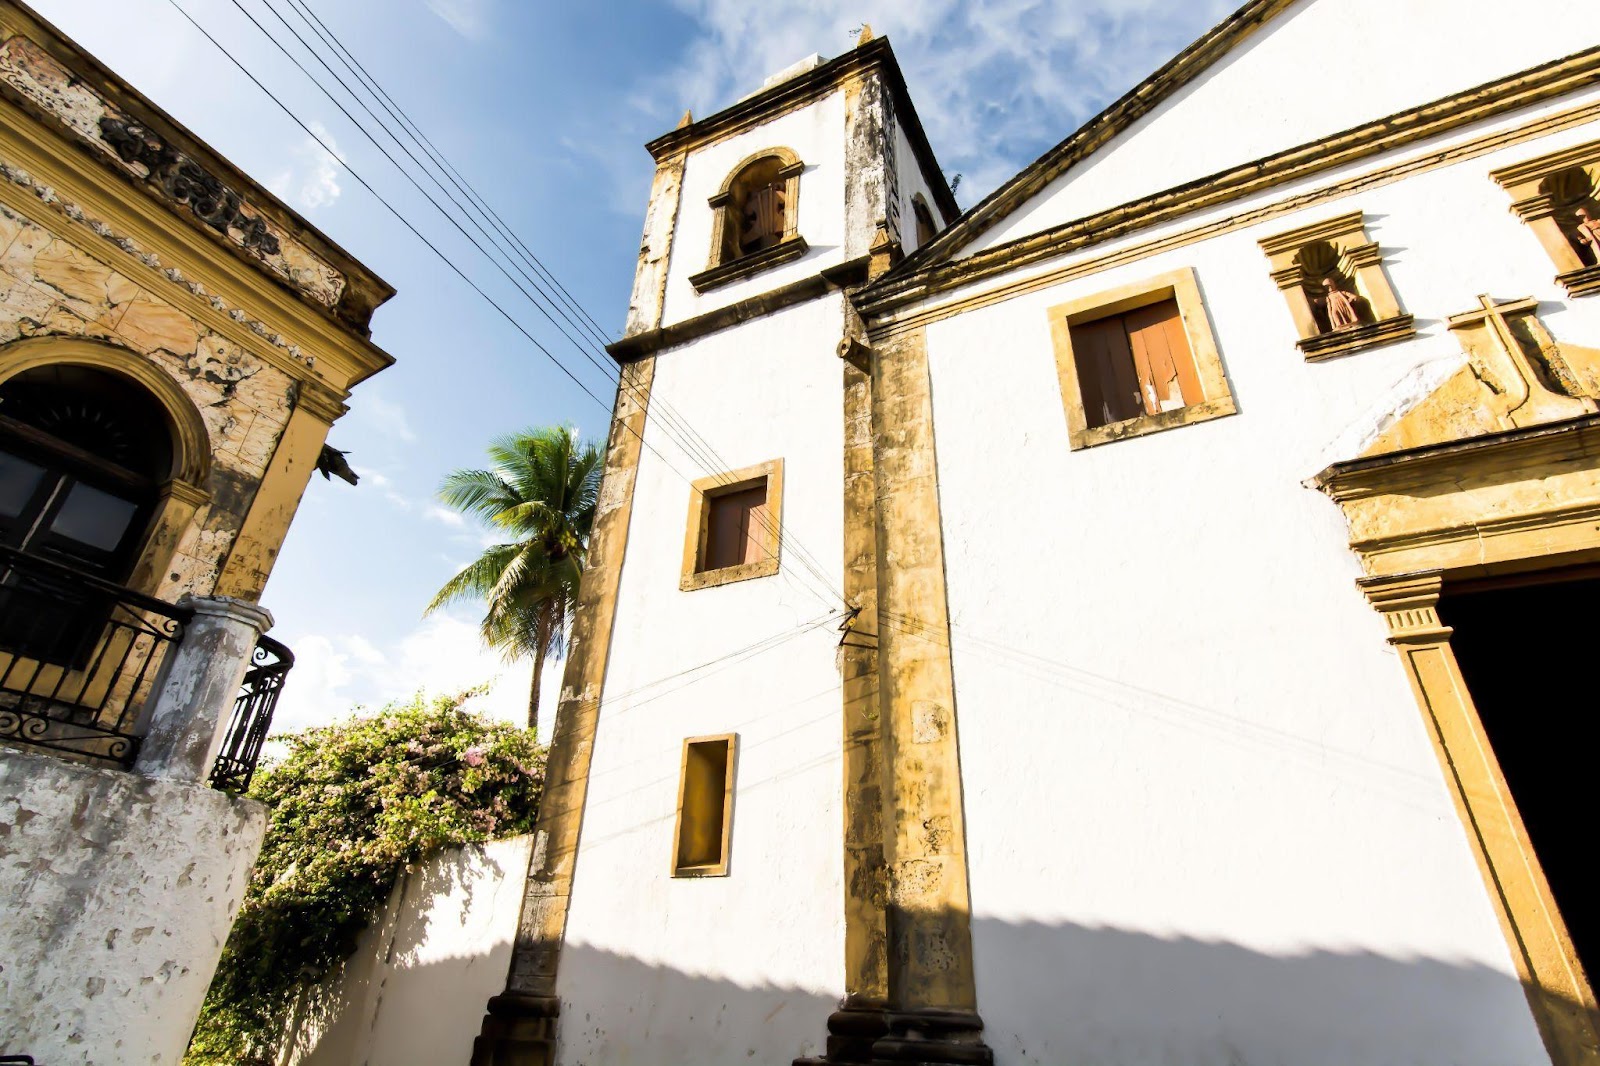 Foto do lado esquerdo da fachada da Igreja de São Cosme e Damião, vista de baixo para cima